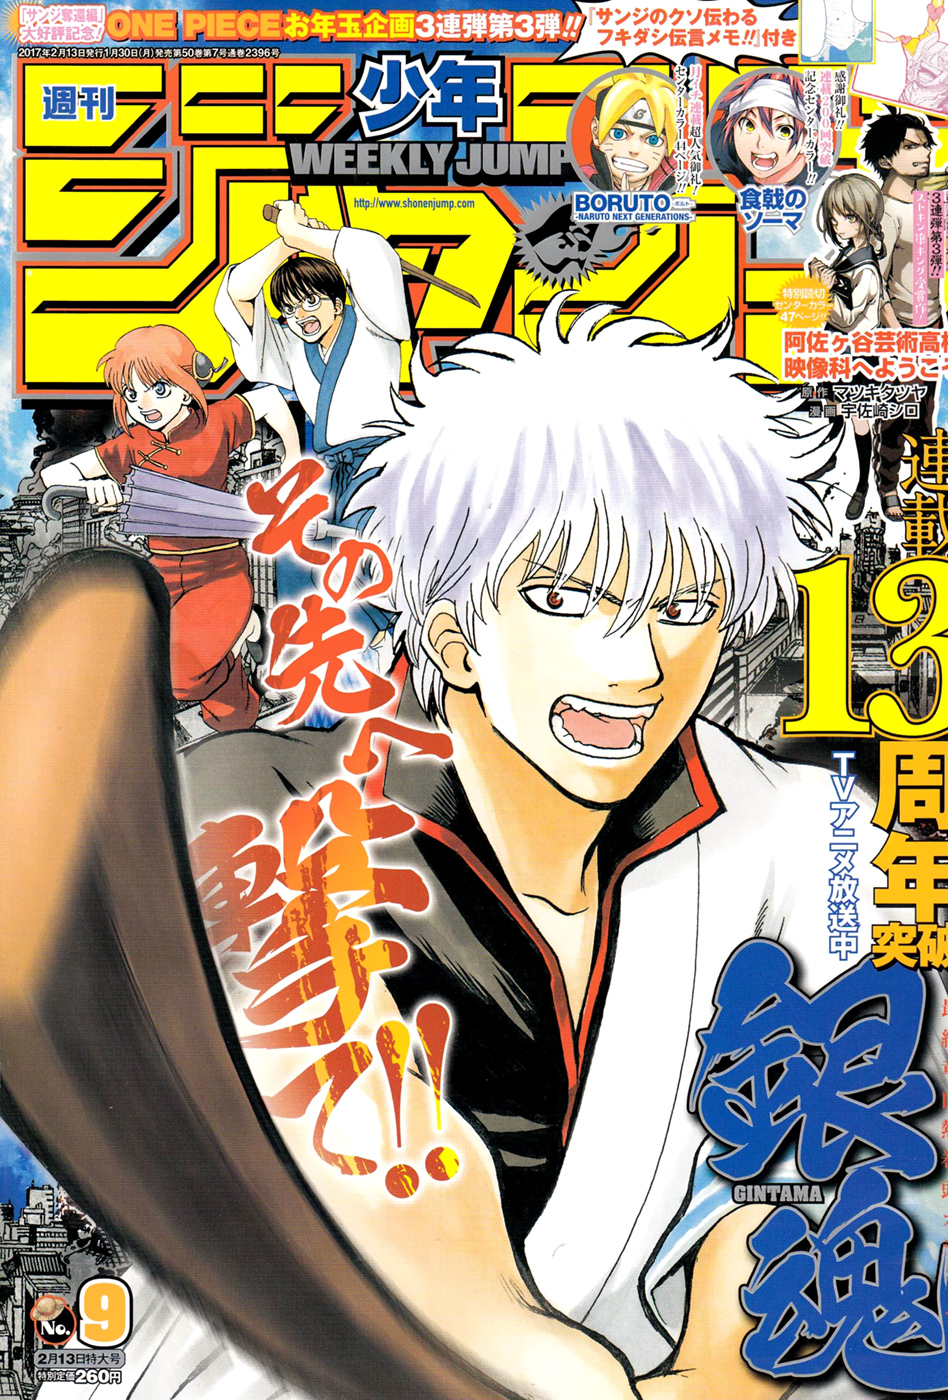 Weekly Shonen Jump 2015 #32 Japan Manga Magazine Hinomaru Zumo